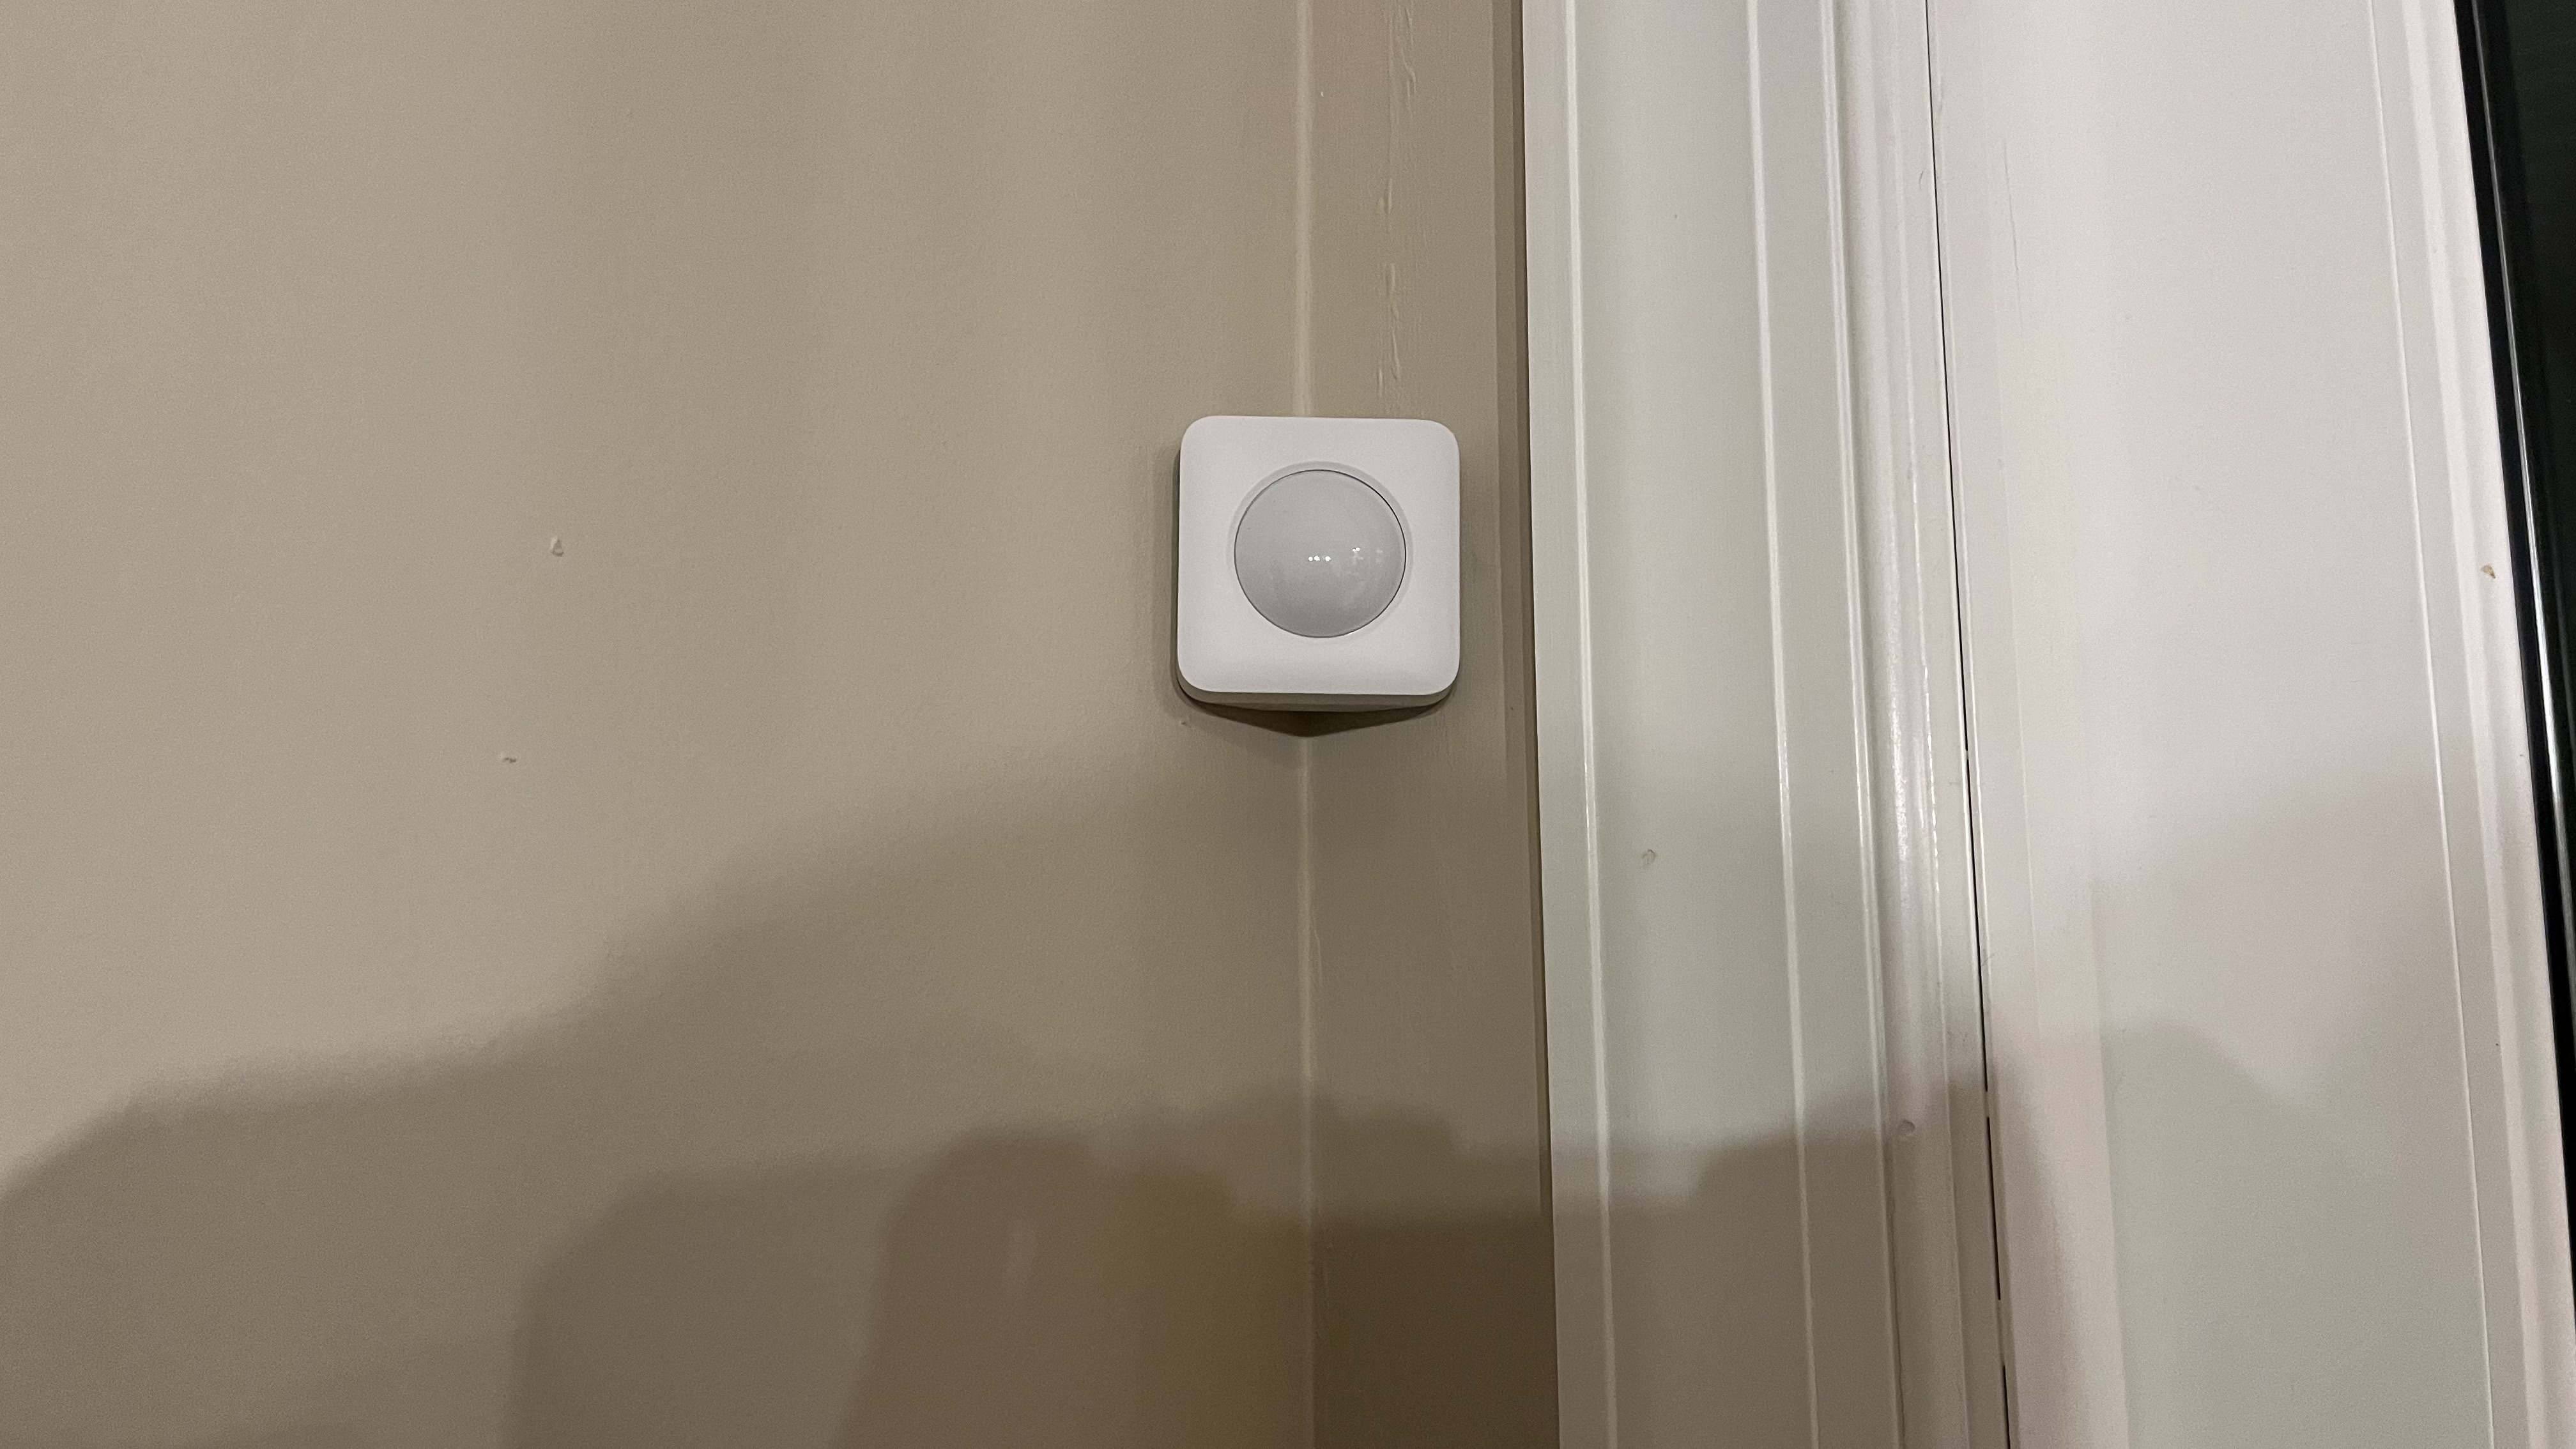 Simplisafe Home Security motion sensor installed